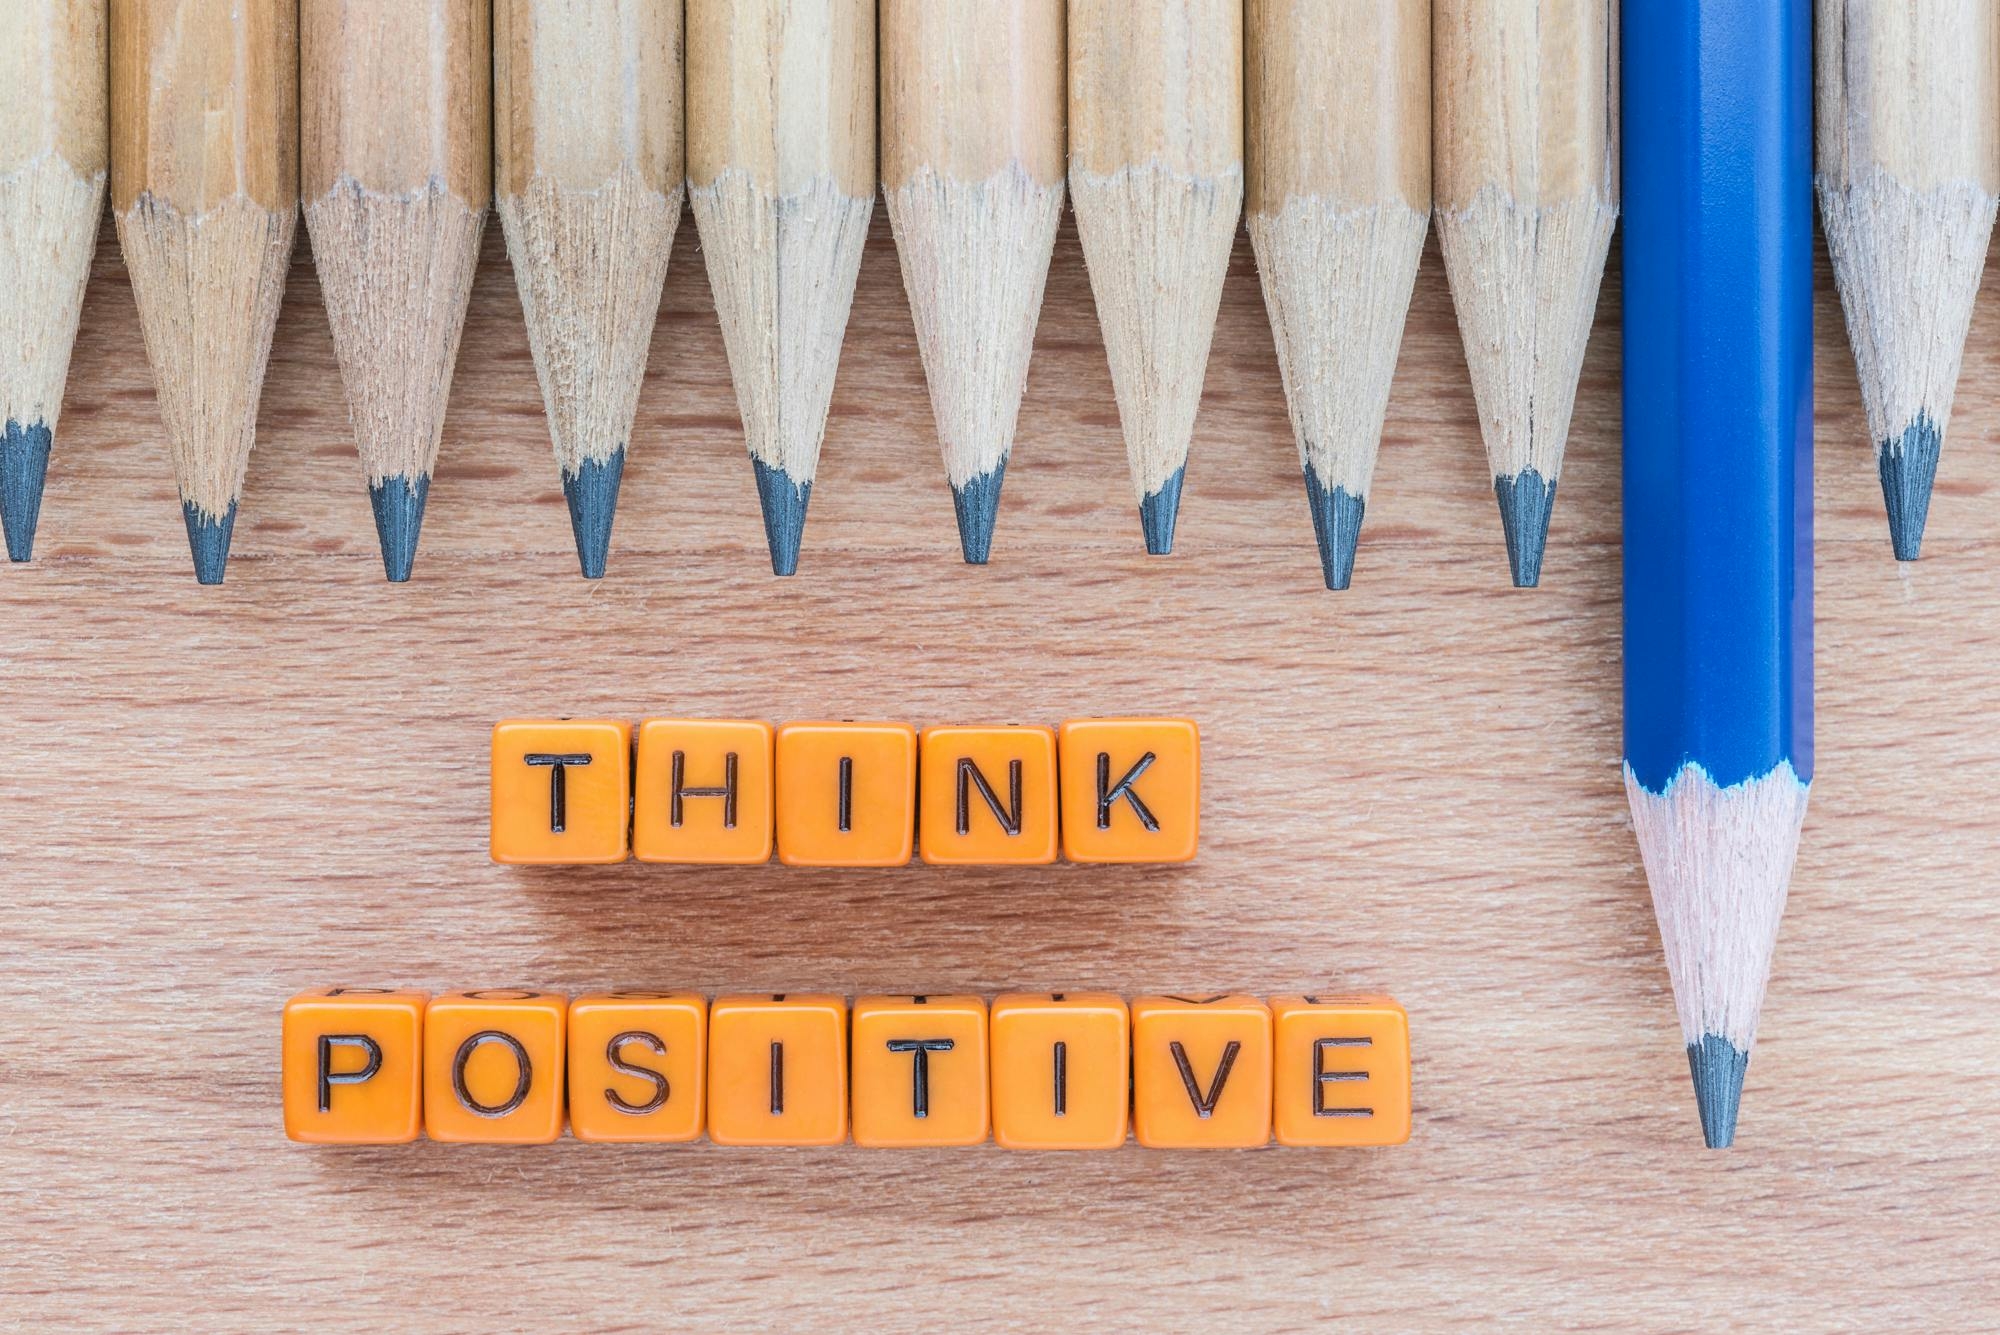 Imagen donde se ve una fila de lápices marrones sobre una mesa, excepto uno de color azul que sobresale de las demás, y debajo hay un texto que dice "think positive", que se traduce a "piensa positivo".